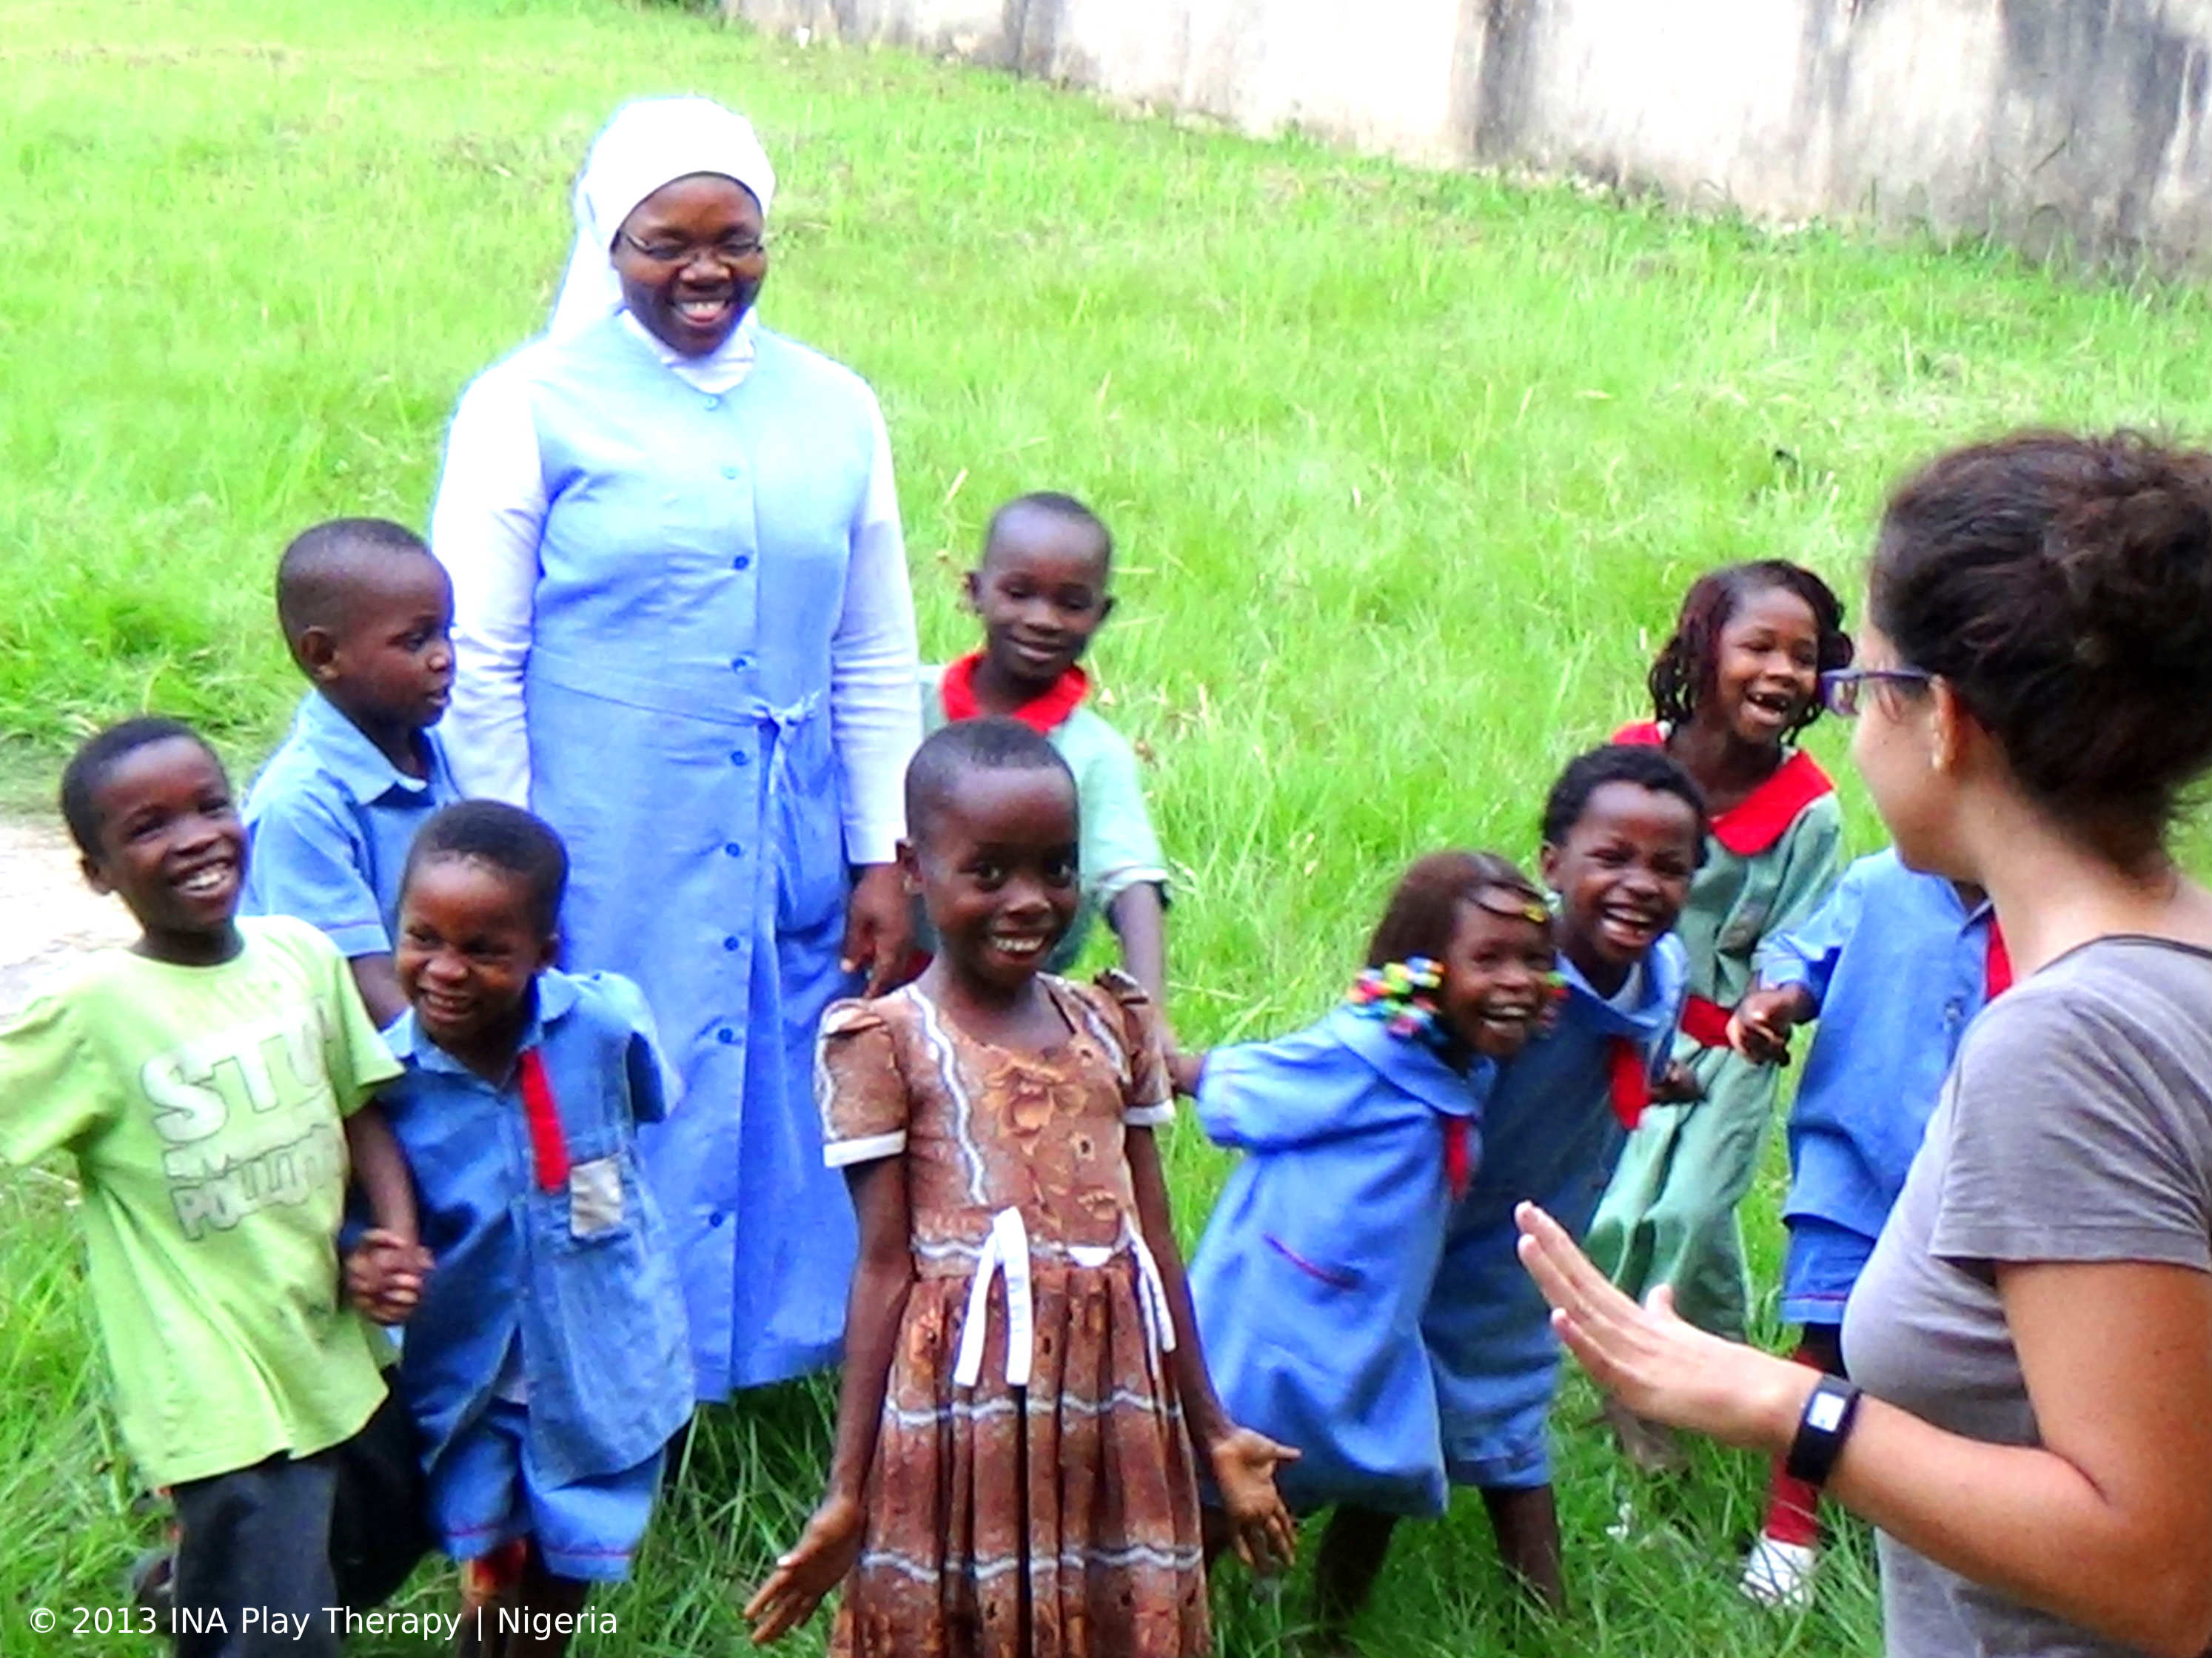 isabella cassina durante un'attività di gioco di gruppo in nigeria